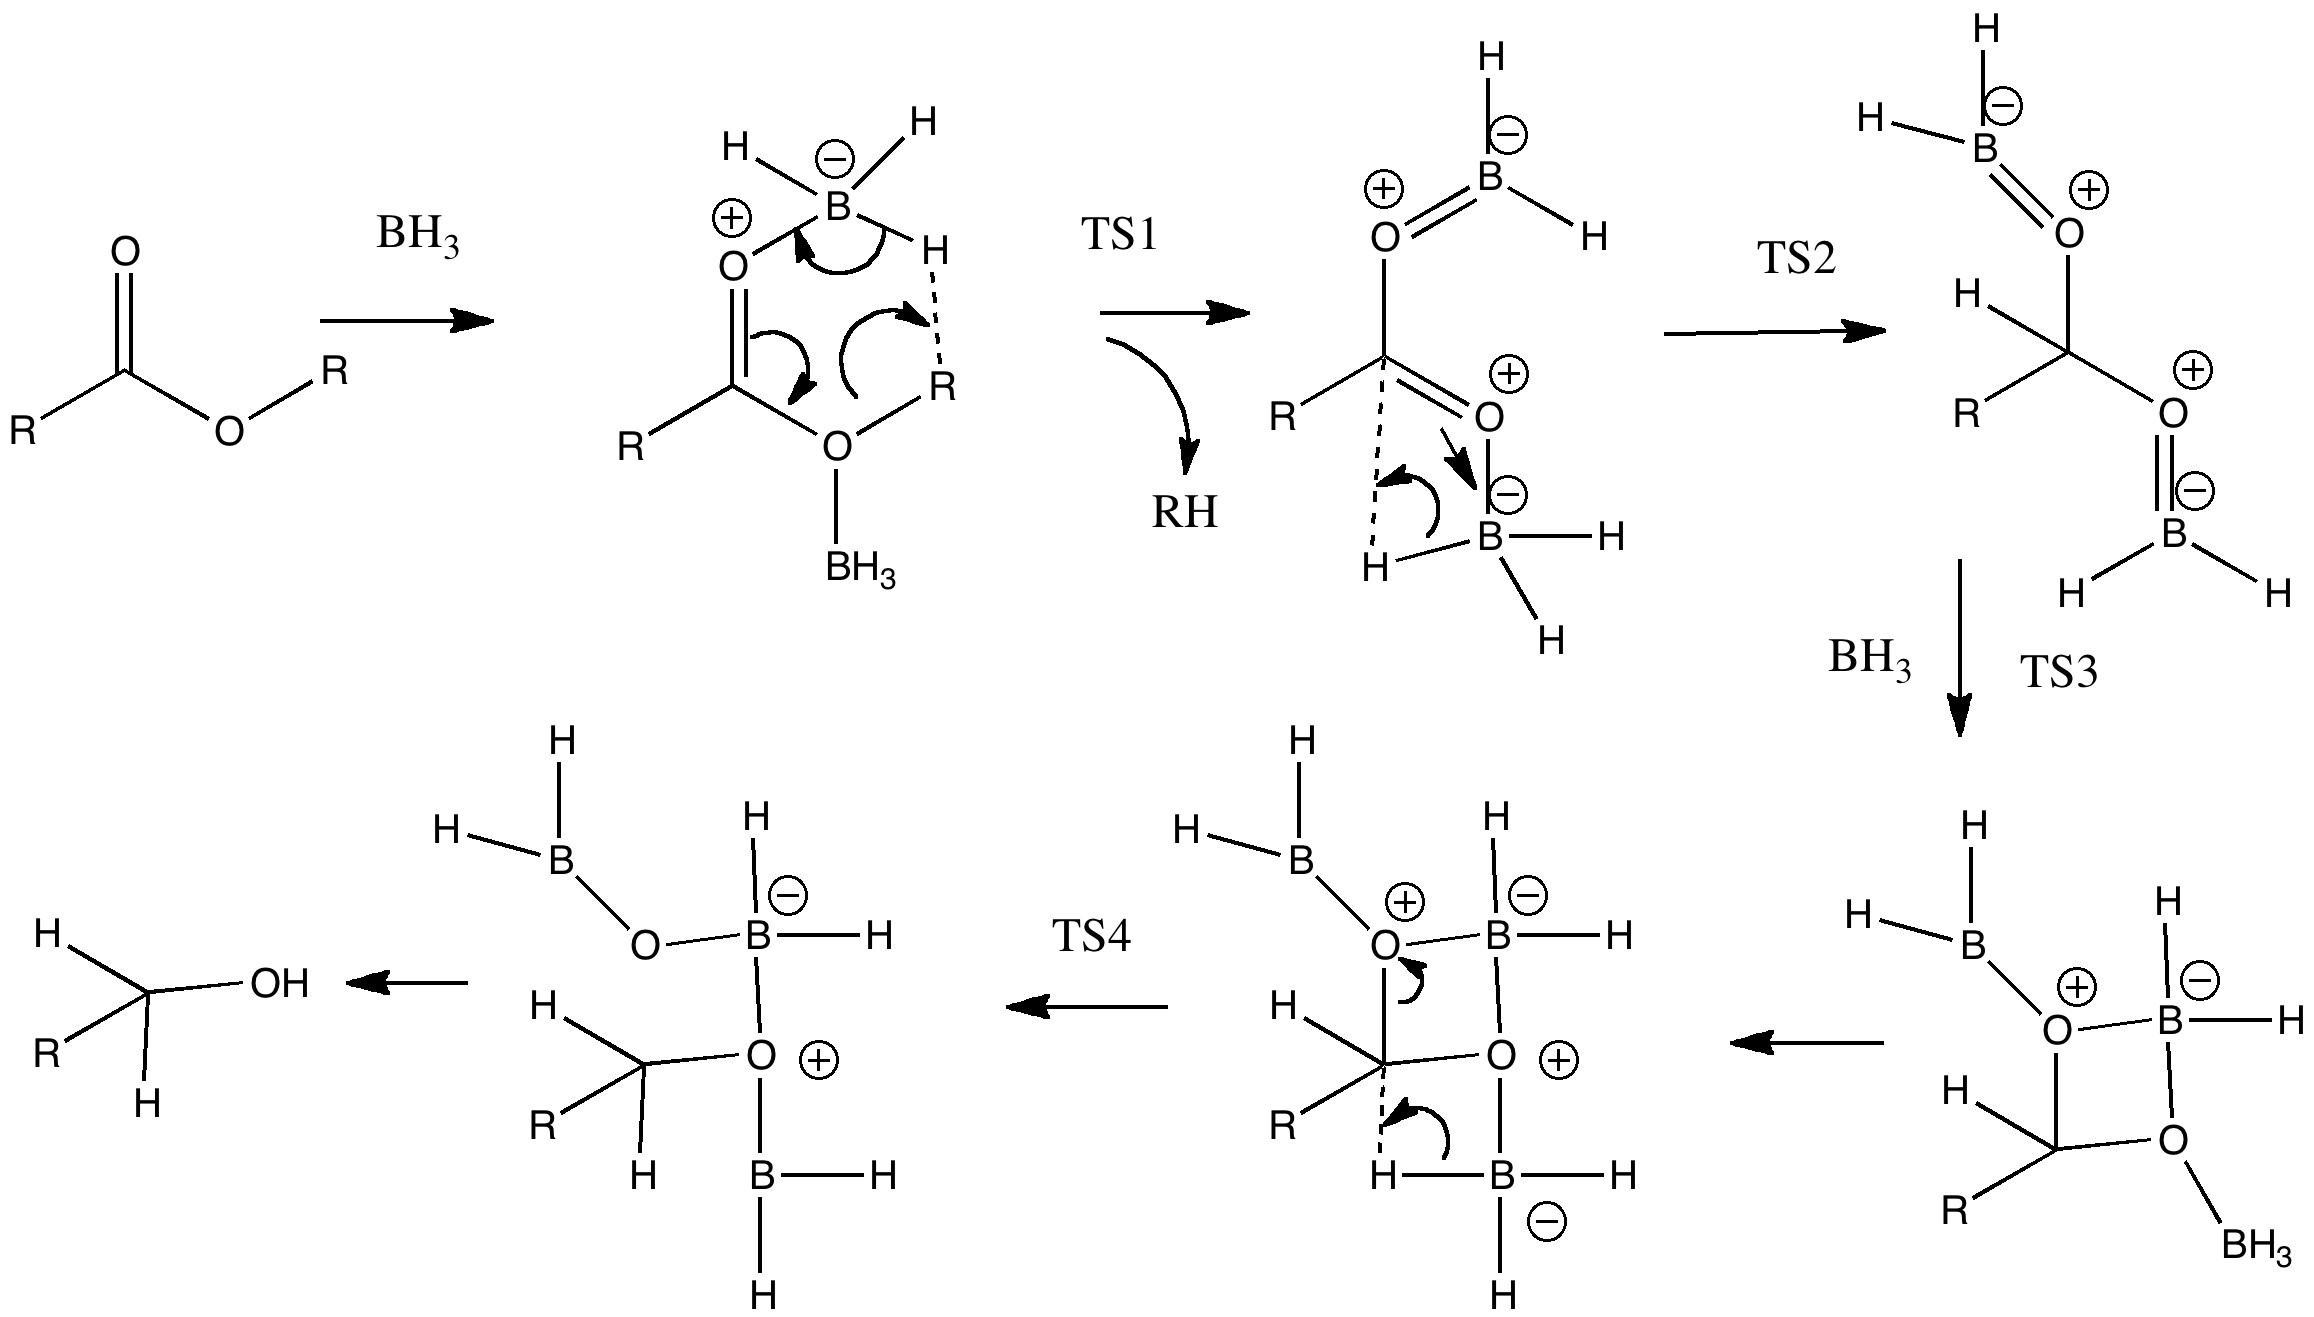 Acyloxyborane, alternative transition state for dihydrogen elimination